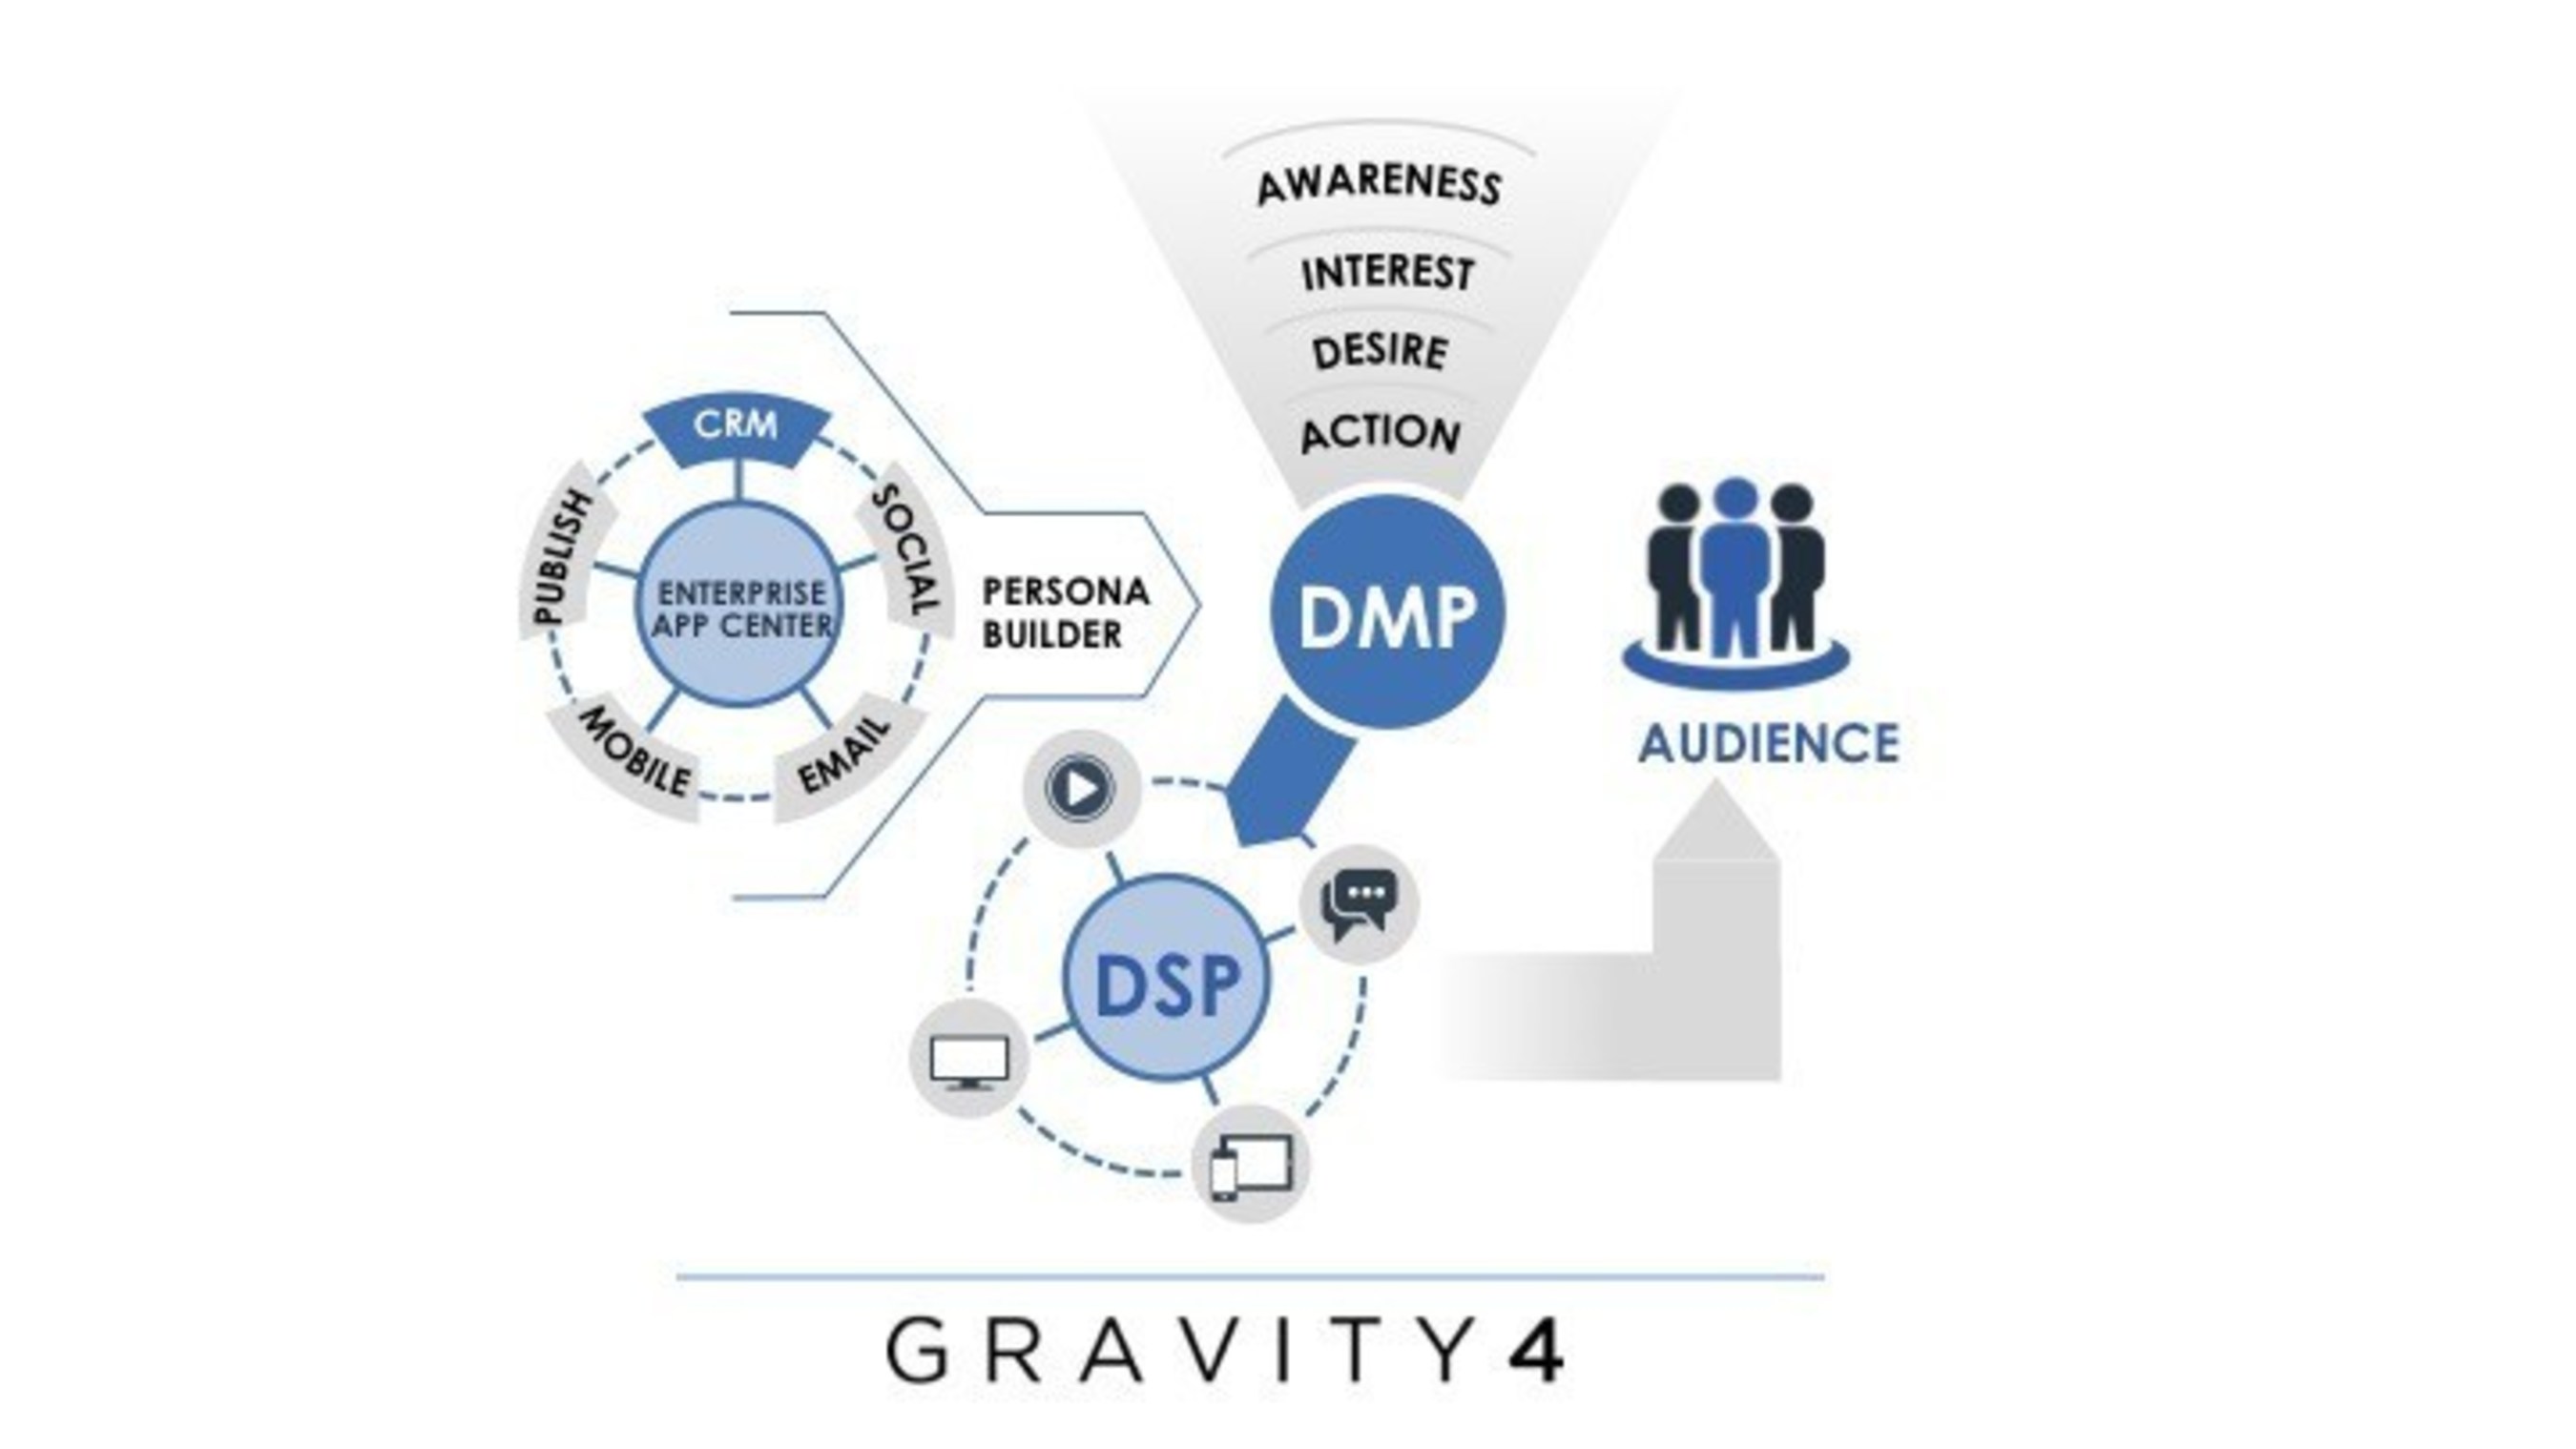 Gravity4 Announces 6th Acquisition of Zurmo; Adding CRM to its Cross-platform Enterprise App Center.